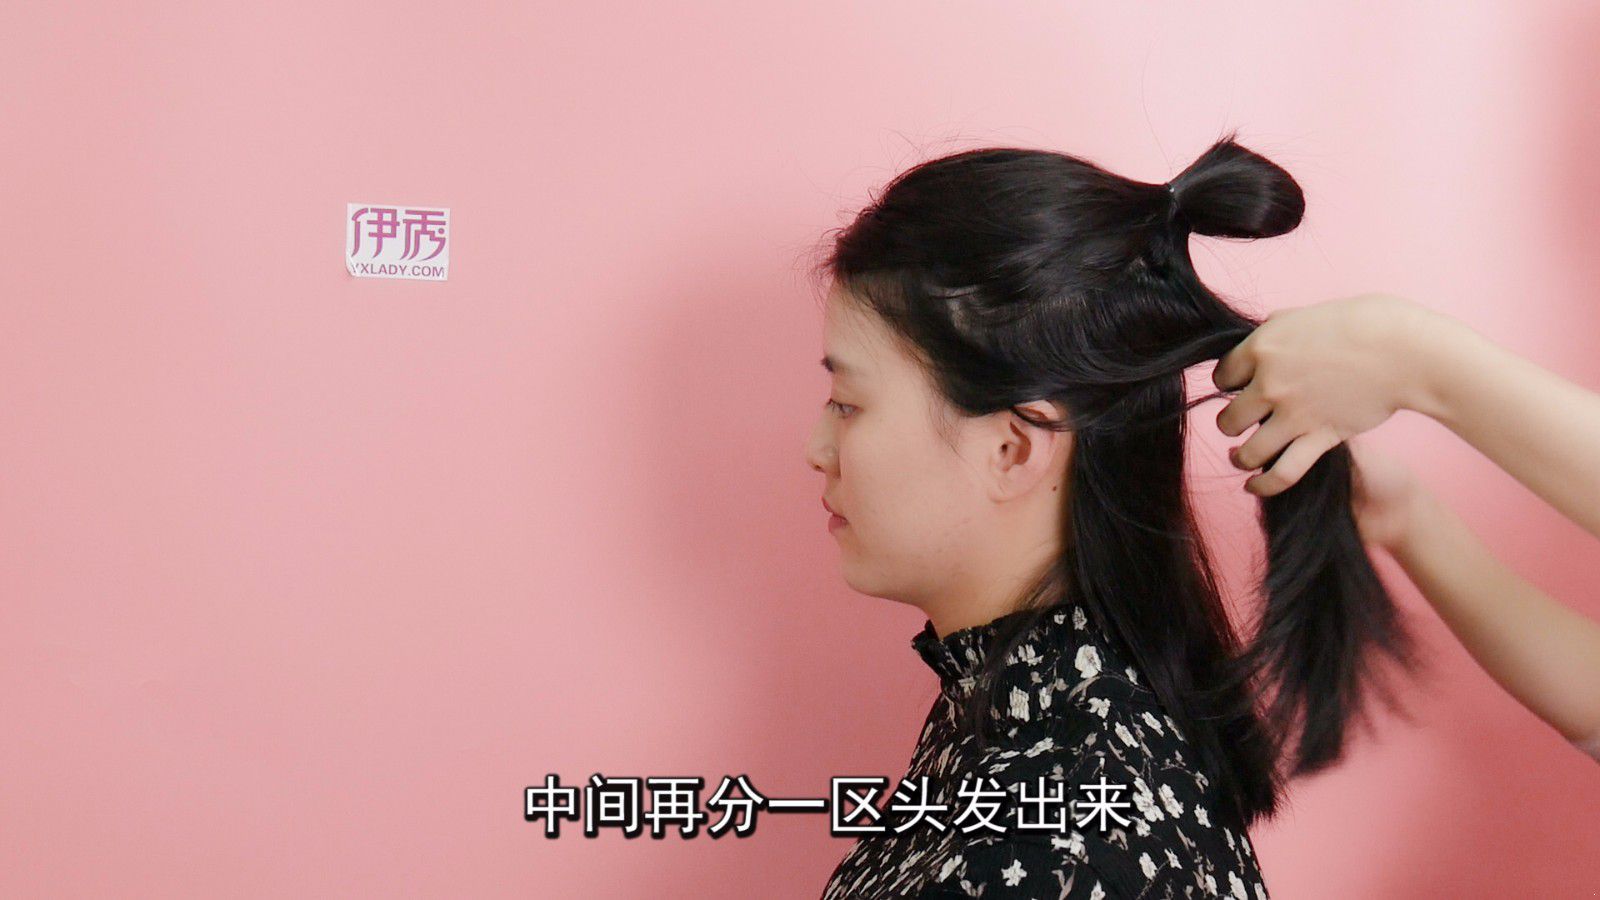 短发发型怎么绑 教你绑气质短发发型_伊秀视频|yxlady.com